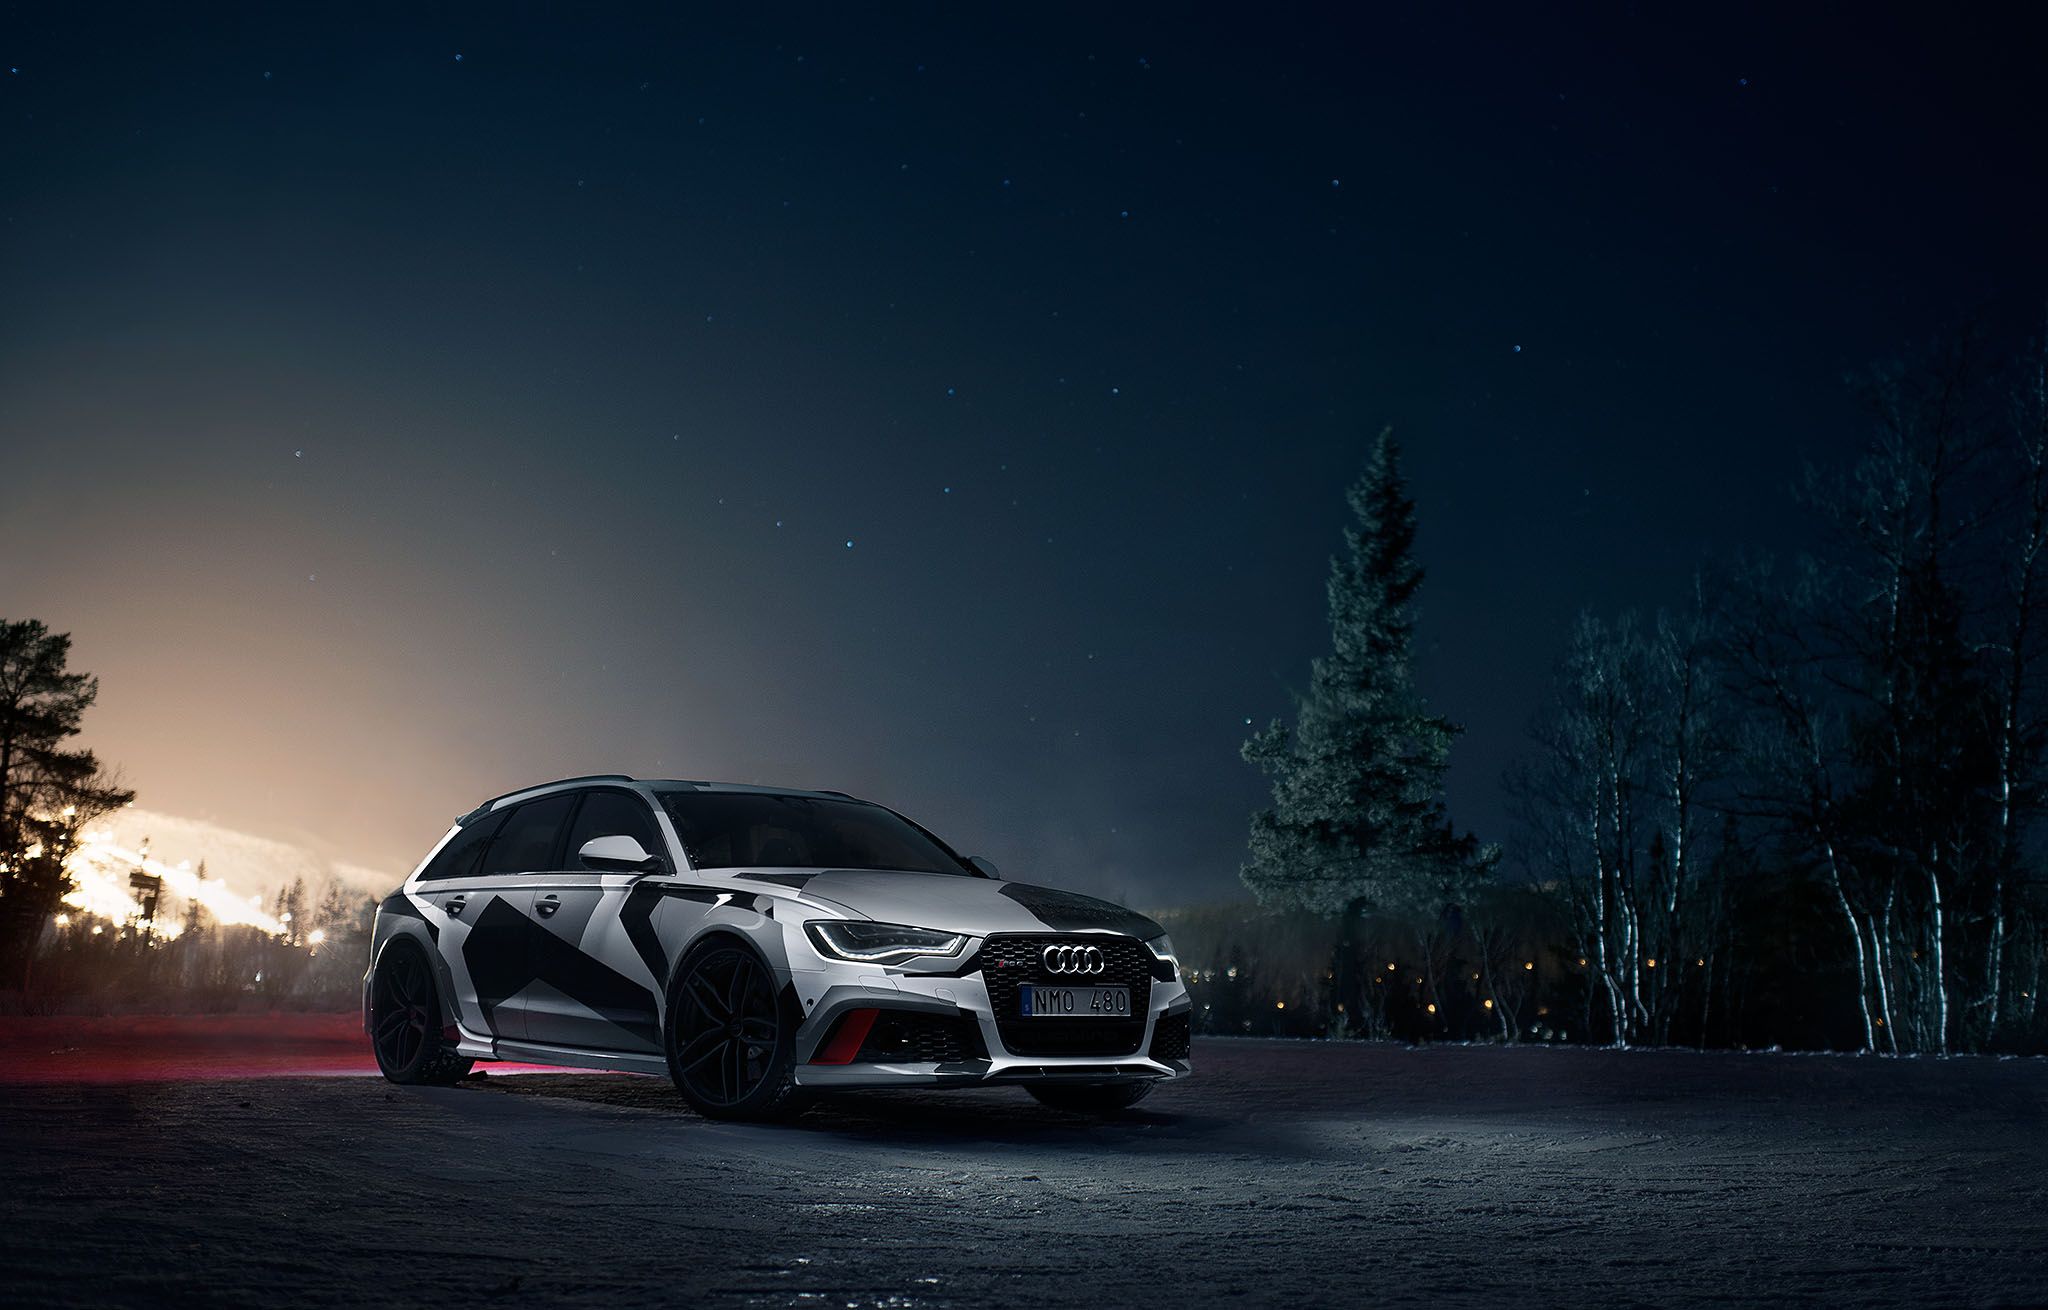 2014 Audi RS 6 Avant Winter Mobile By Jon Olsson